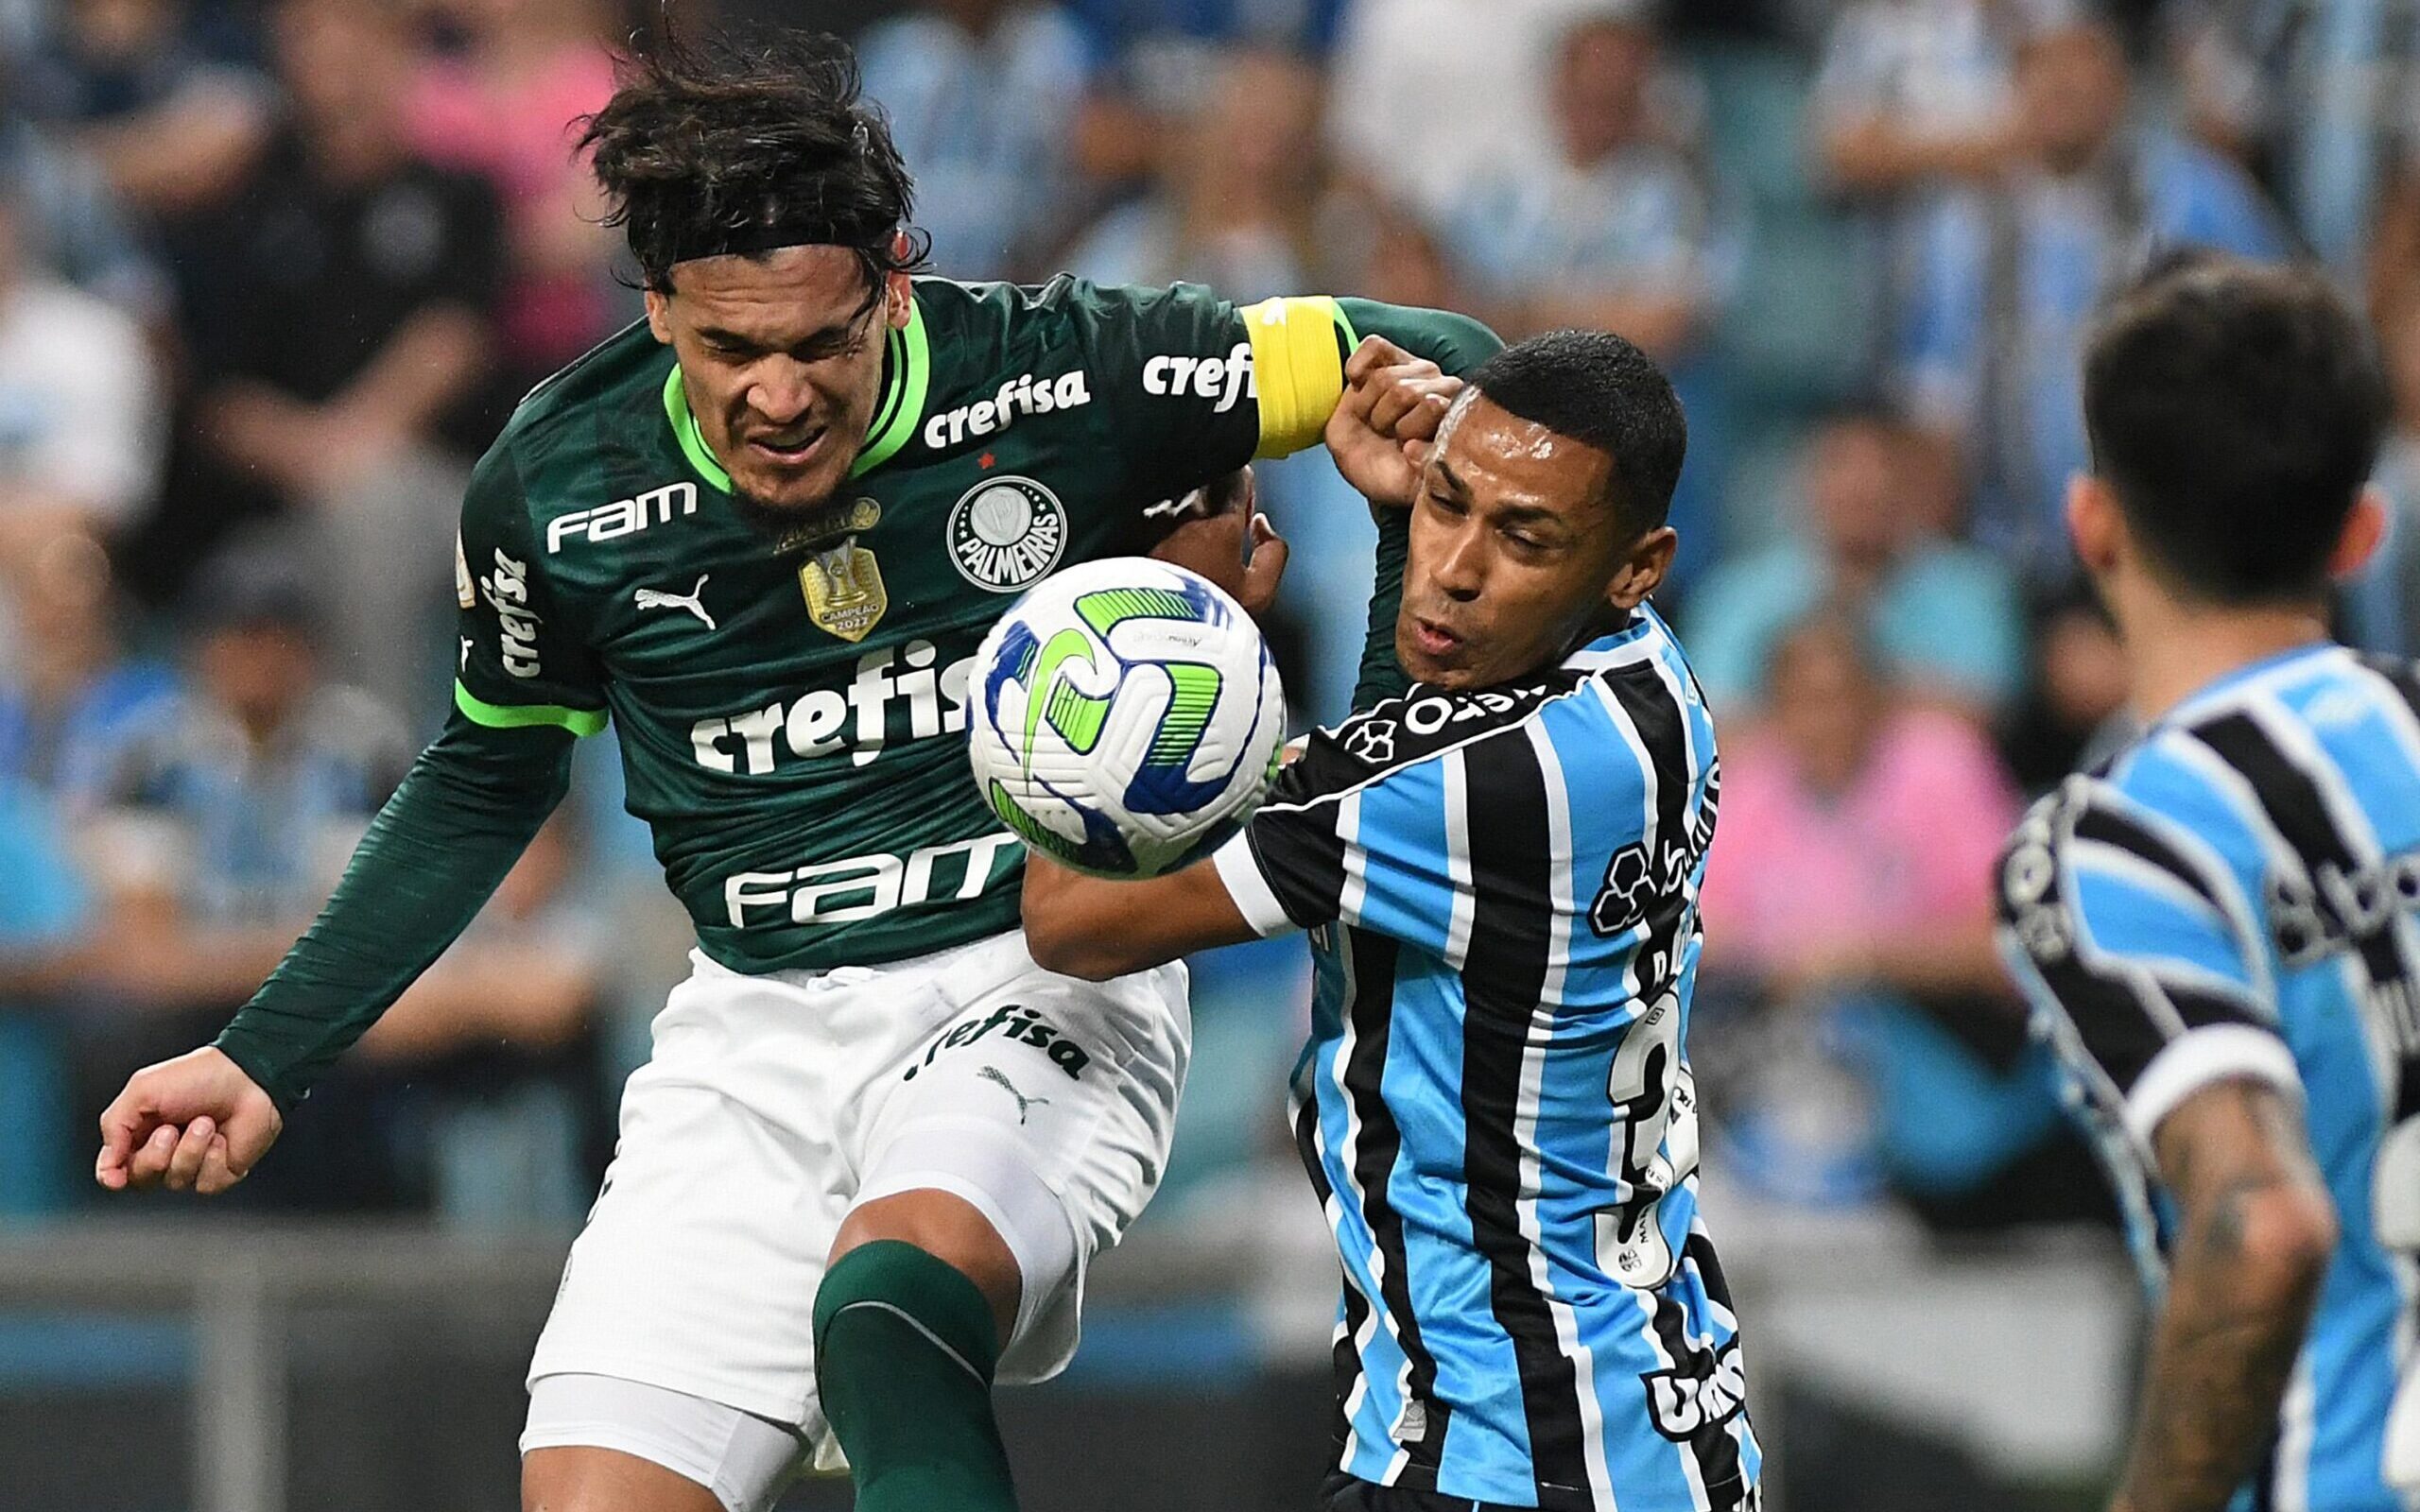 Grêmio joga pouco e leva goleada do Palmeiras pelo Brasileirão